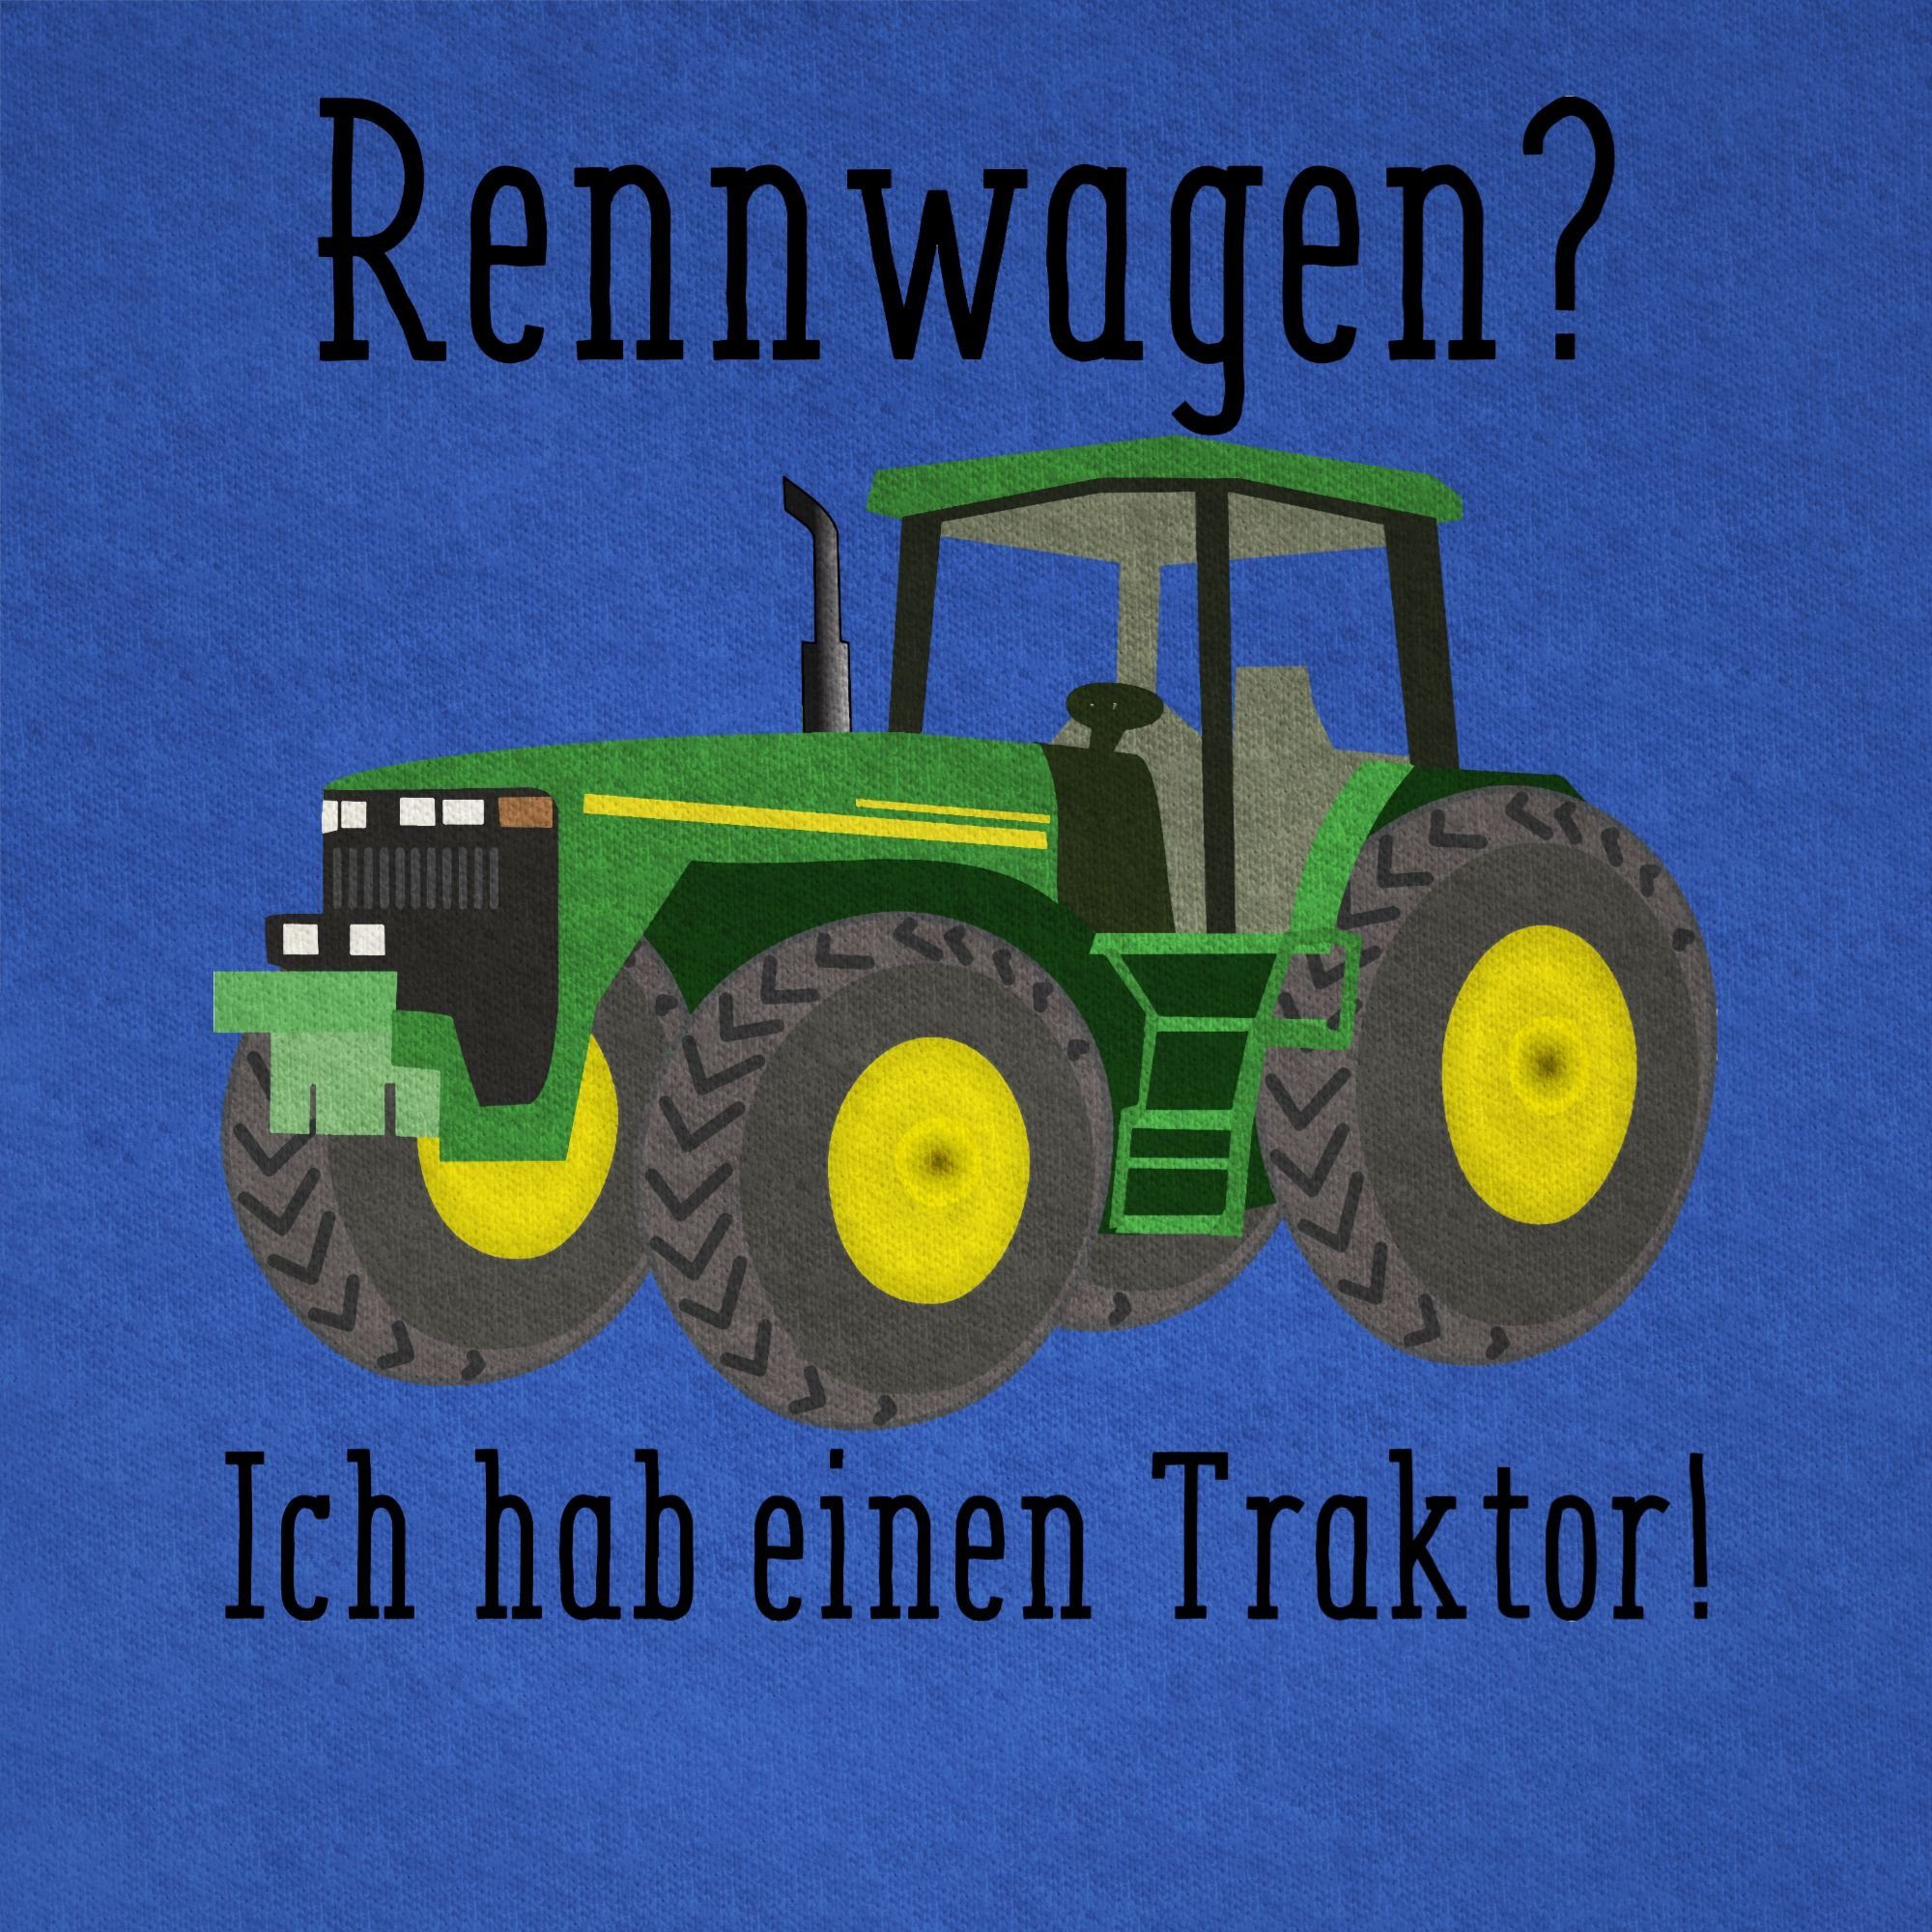 Ges einen T-Shirt Rennwagen Traktor Geschenk Bauer - Royalblau Traktor Trecker 02 Ich Shirtracer habe Landwirt